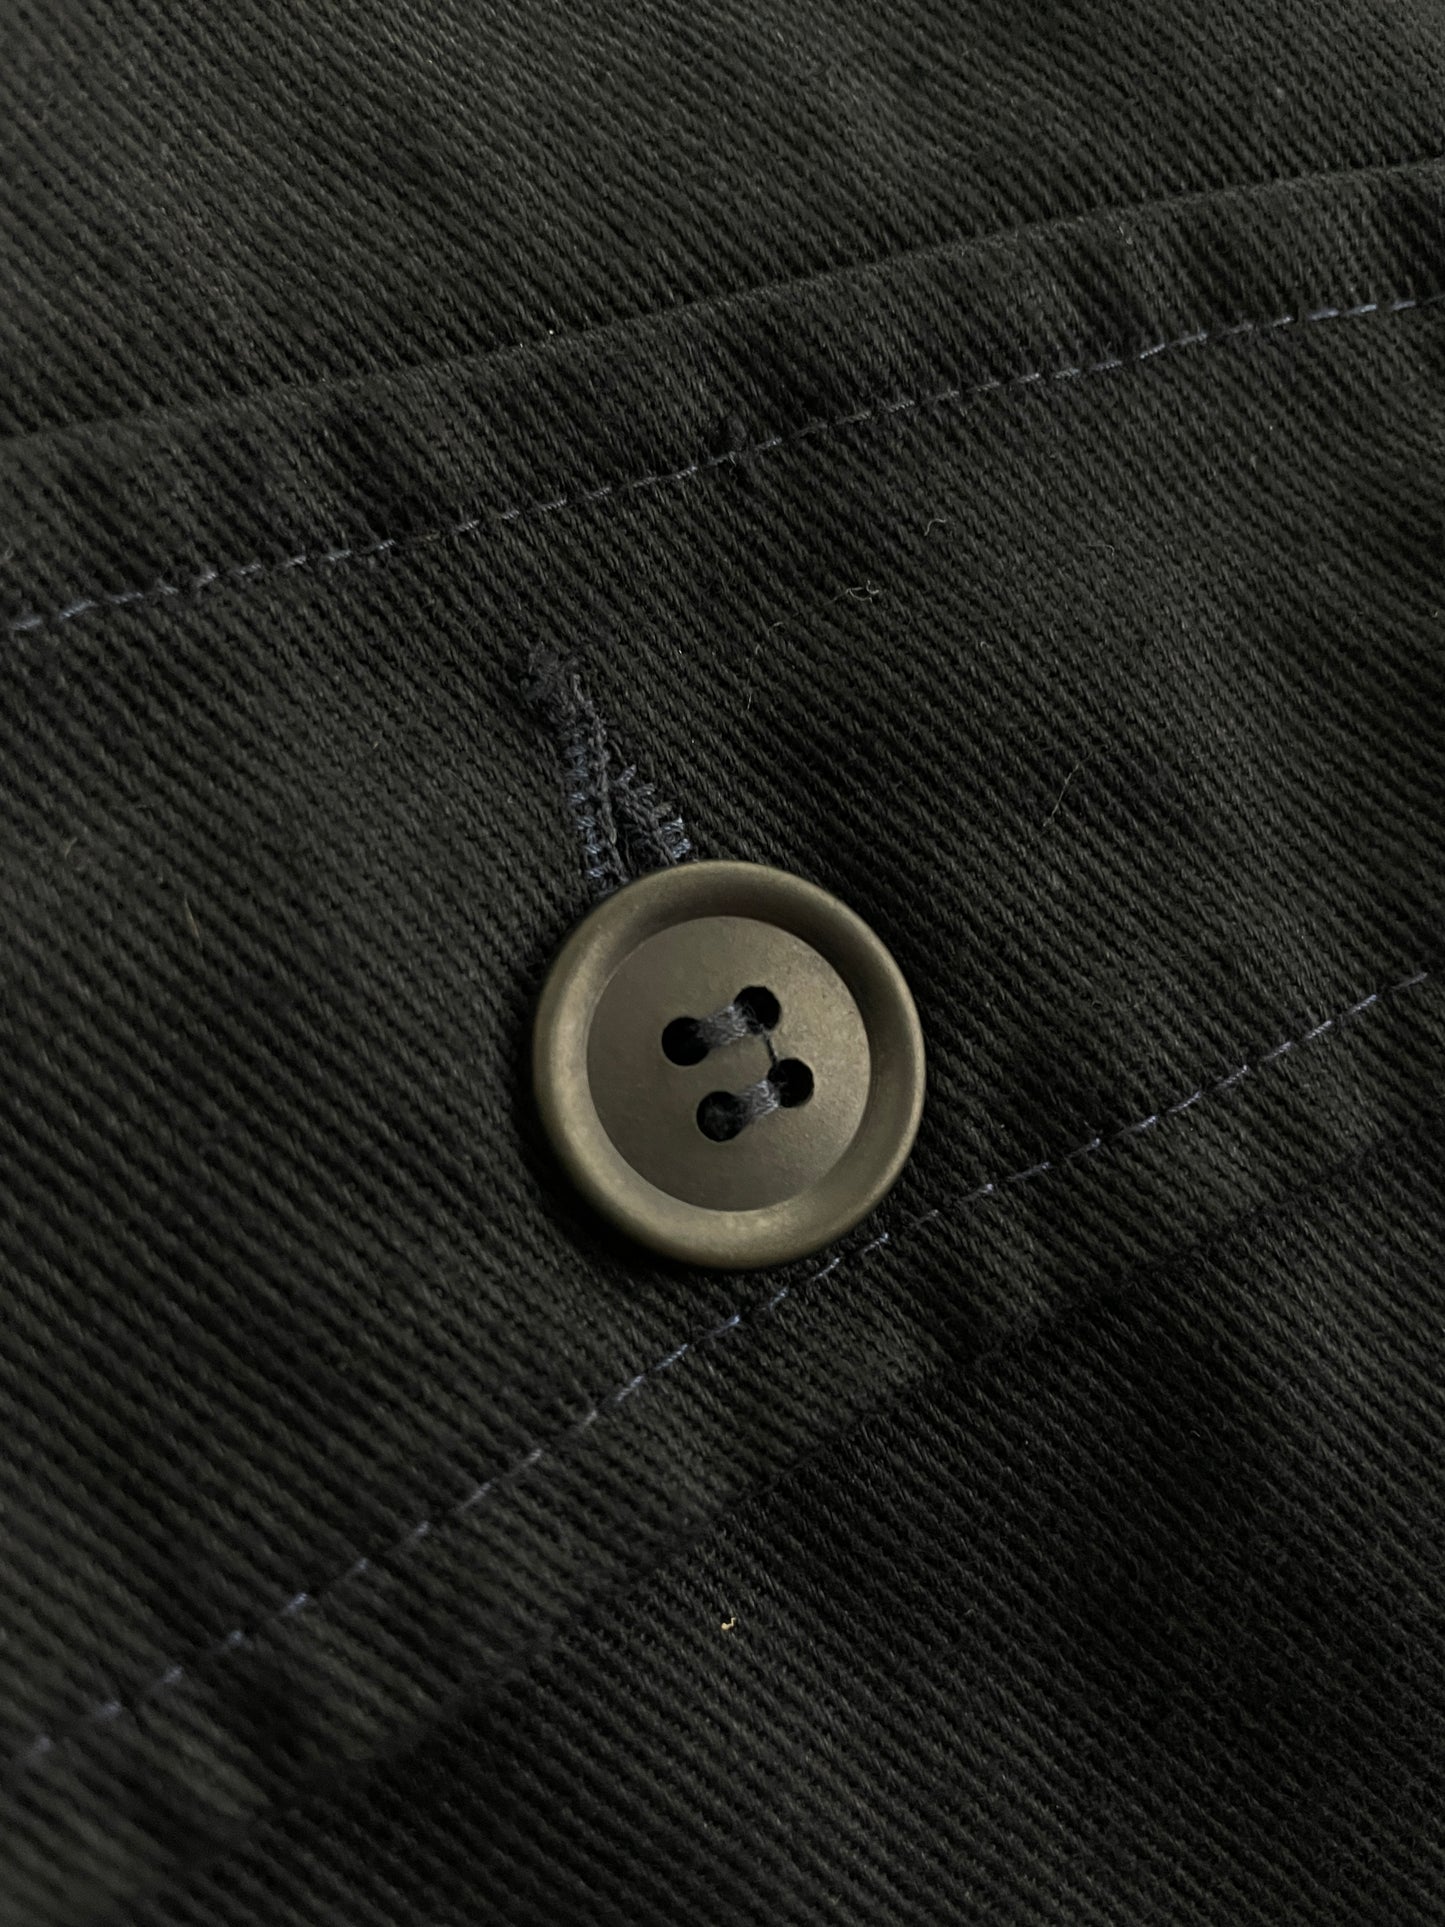 Overdyed Euro Chore Jacket [L/XL]